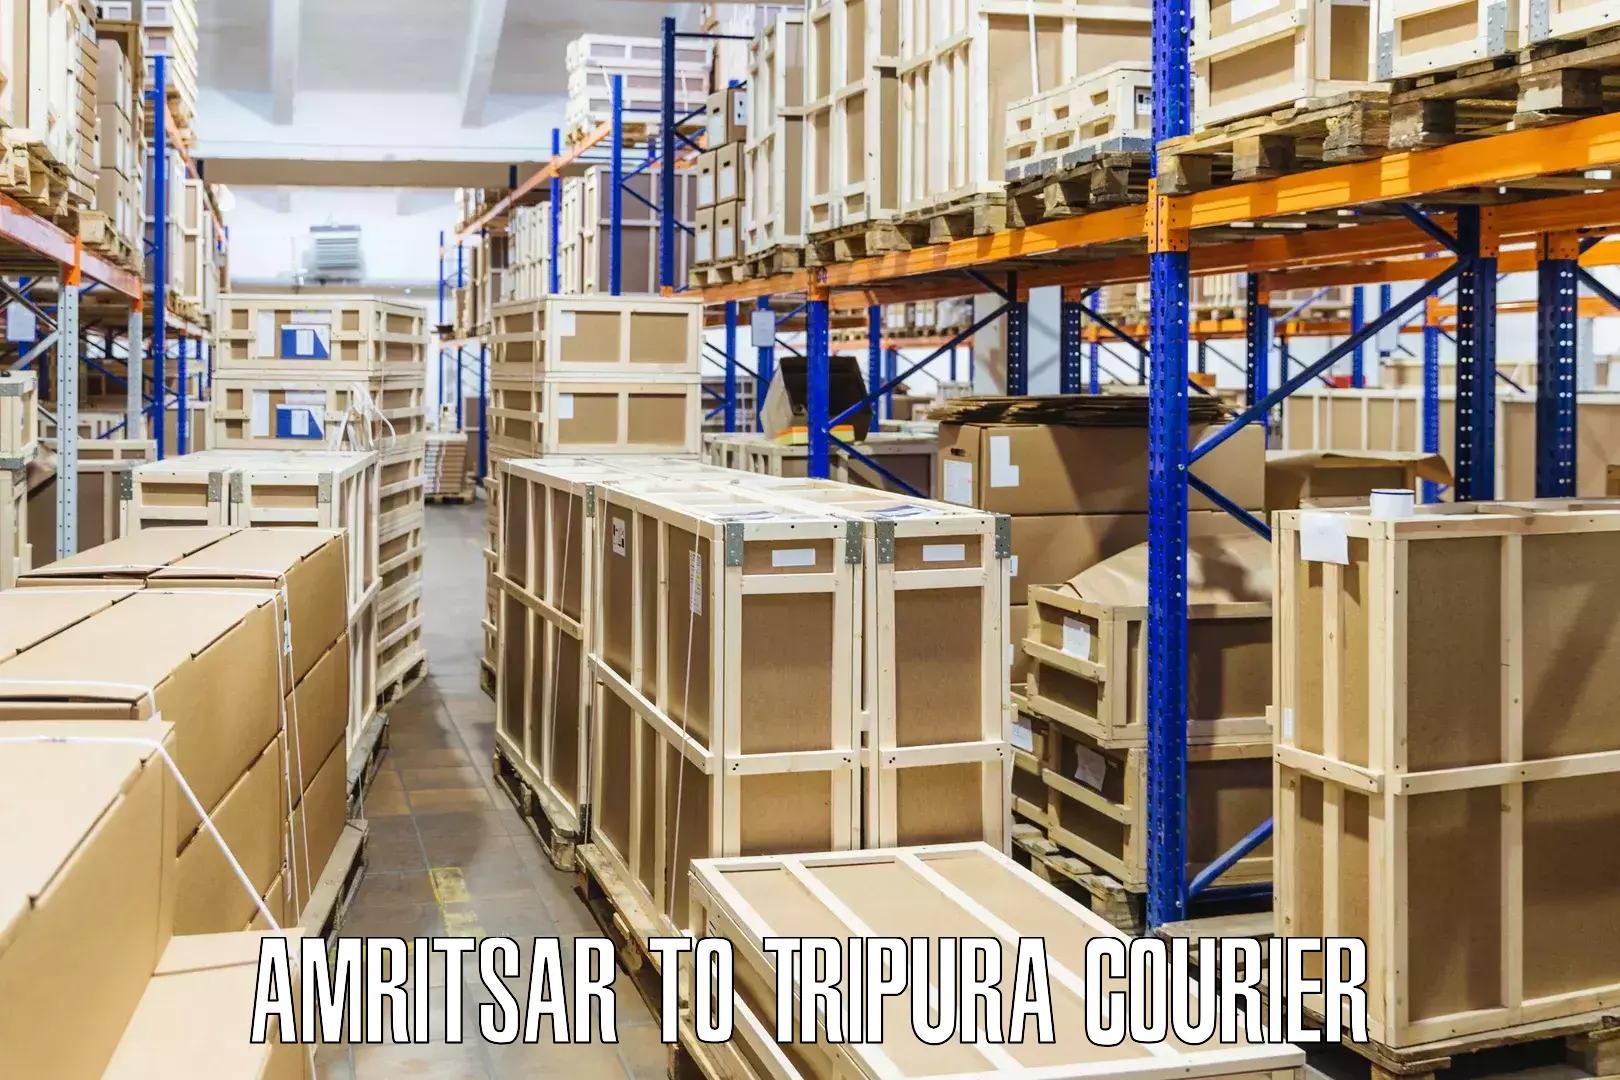 Expedited shipping methods Amritsar to Ambassa